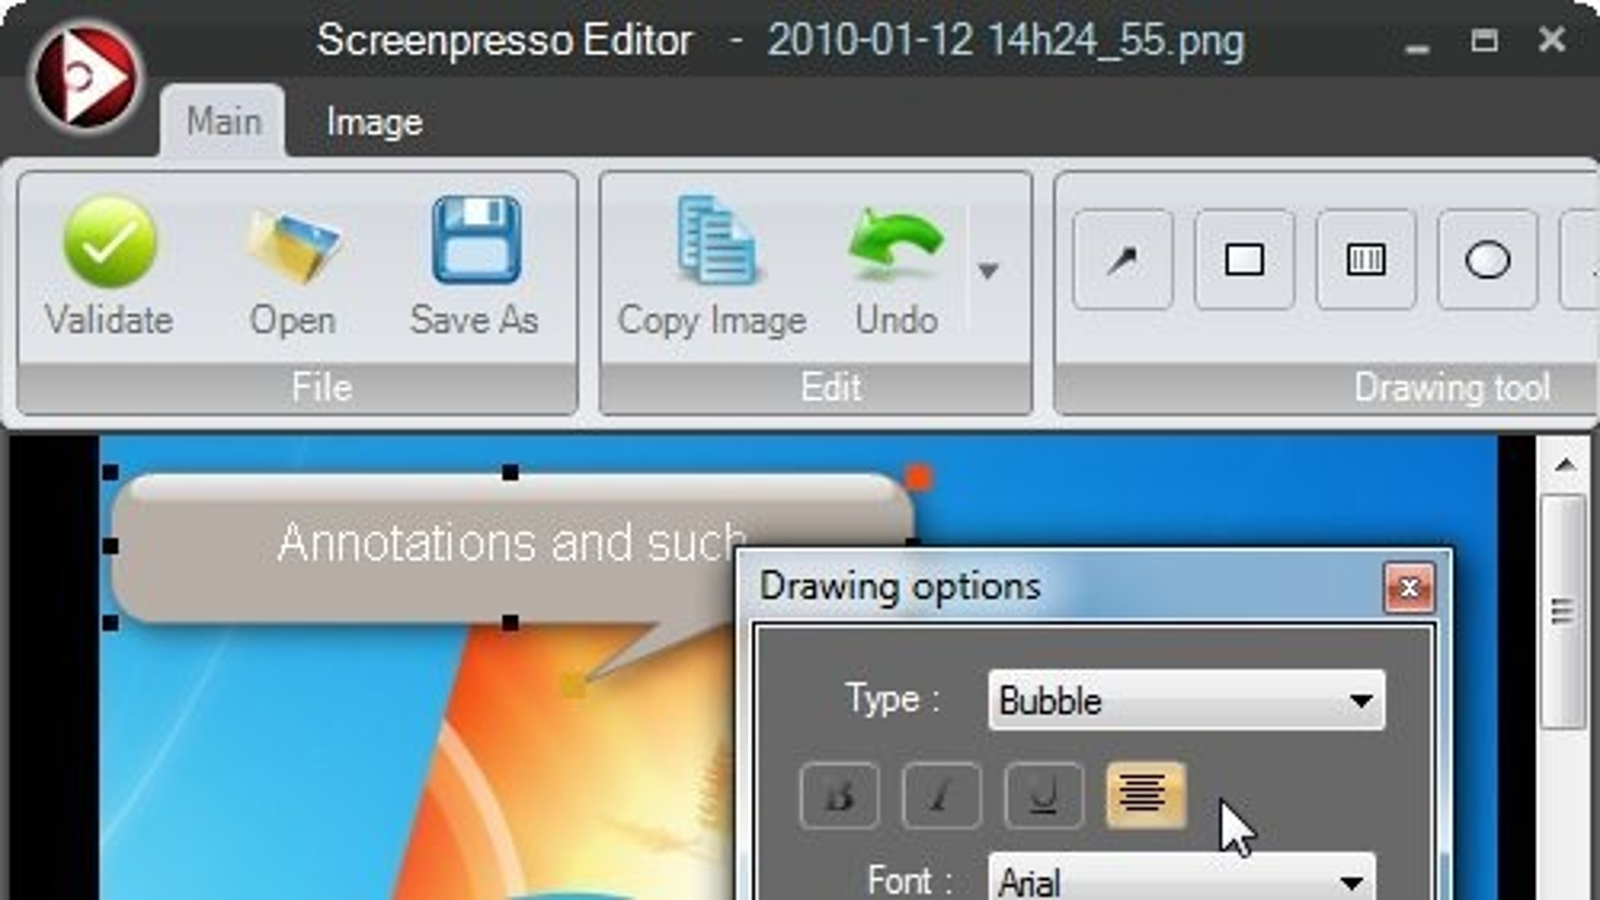 instal the last version for mac Screenpresso Pro 2.1.13